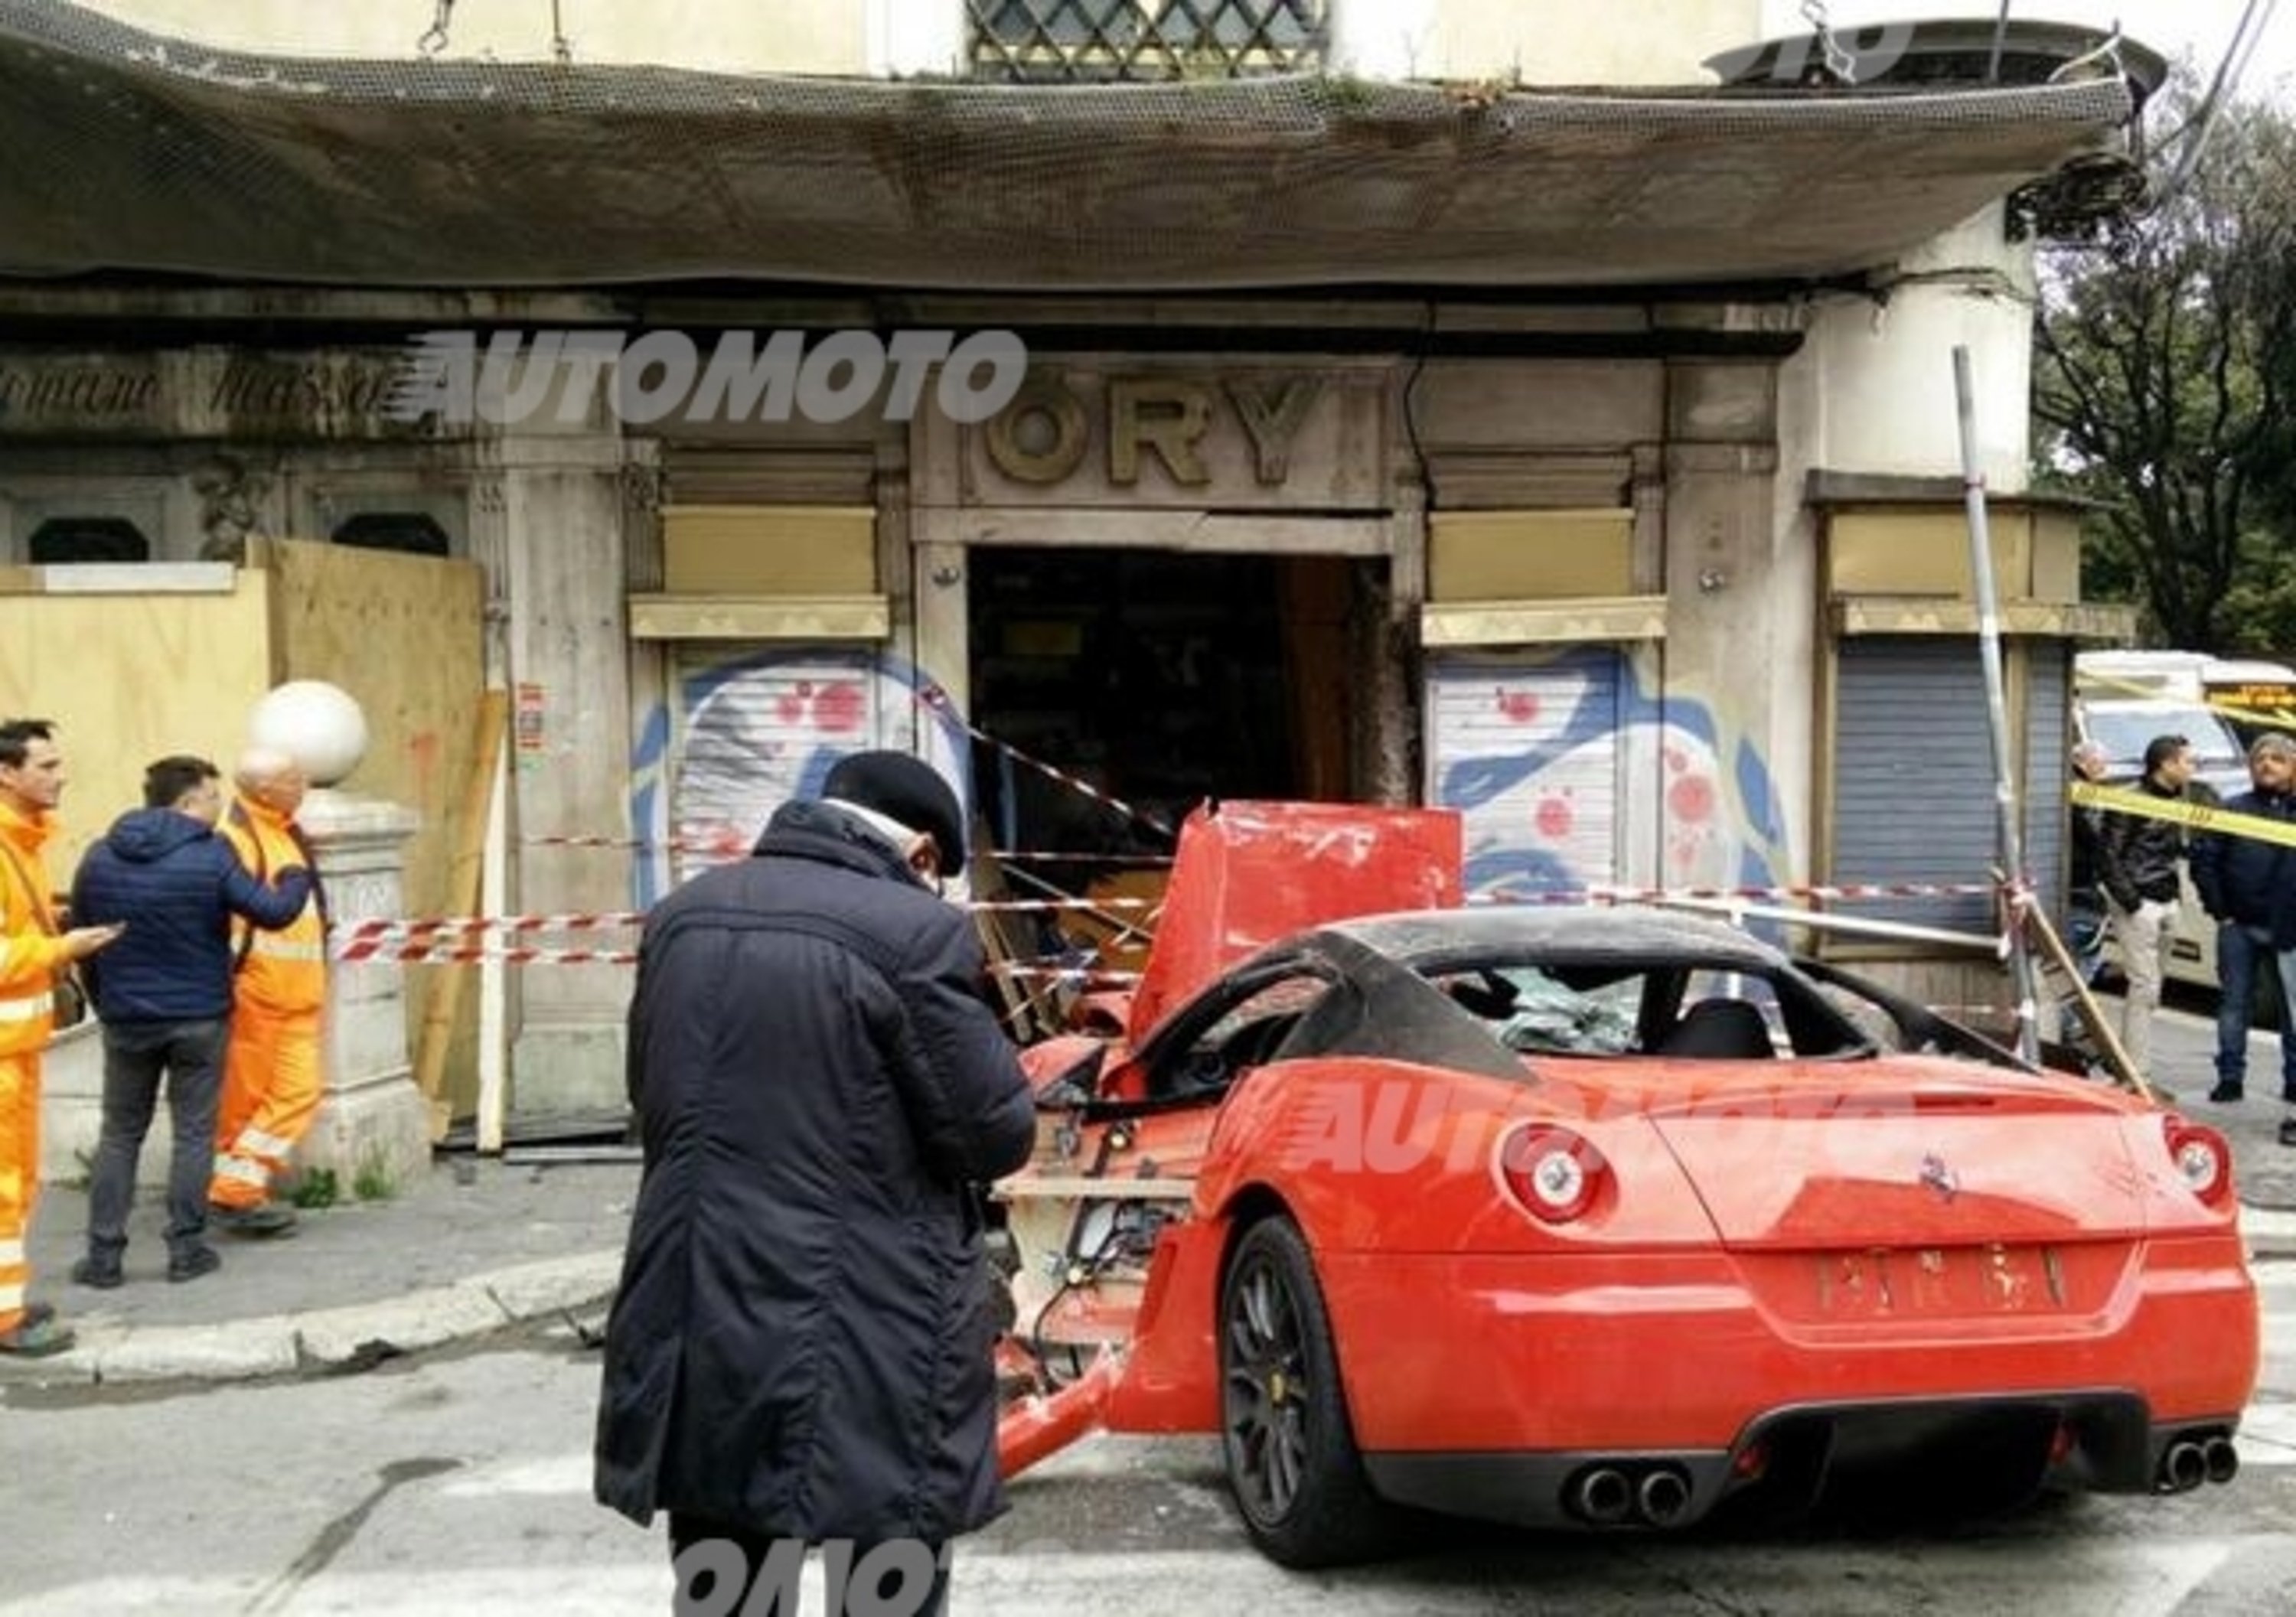 Roma, una rarissima Ferrari 599 GTO distrugge un negozio!